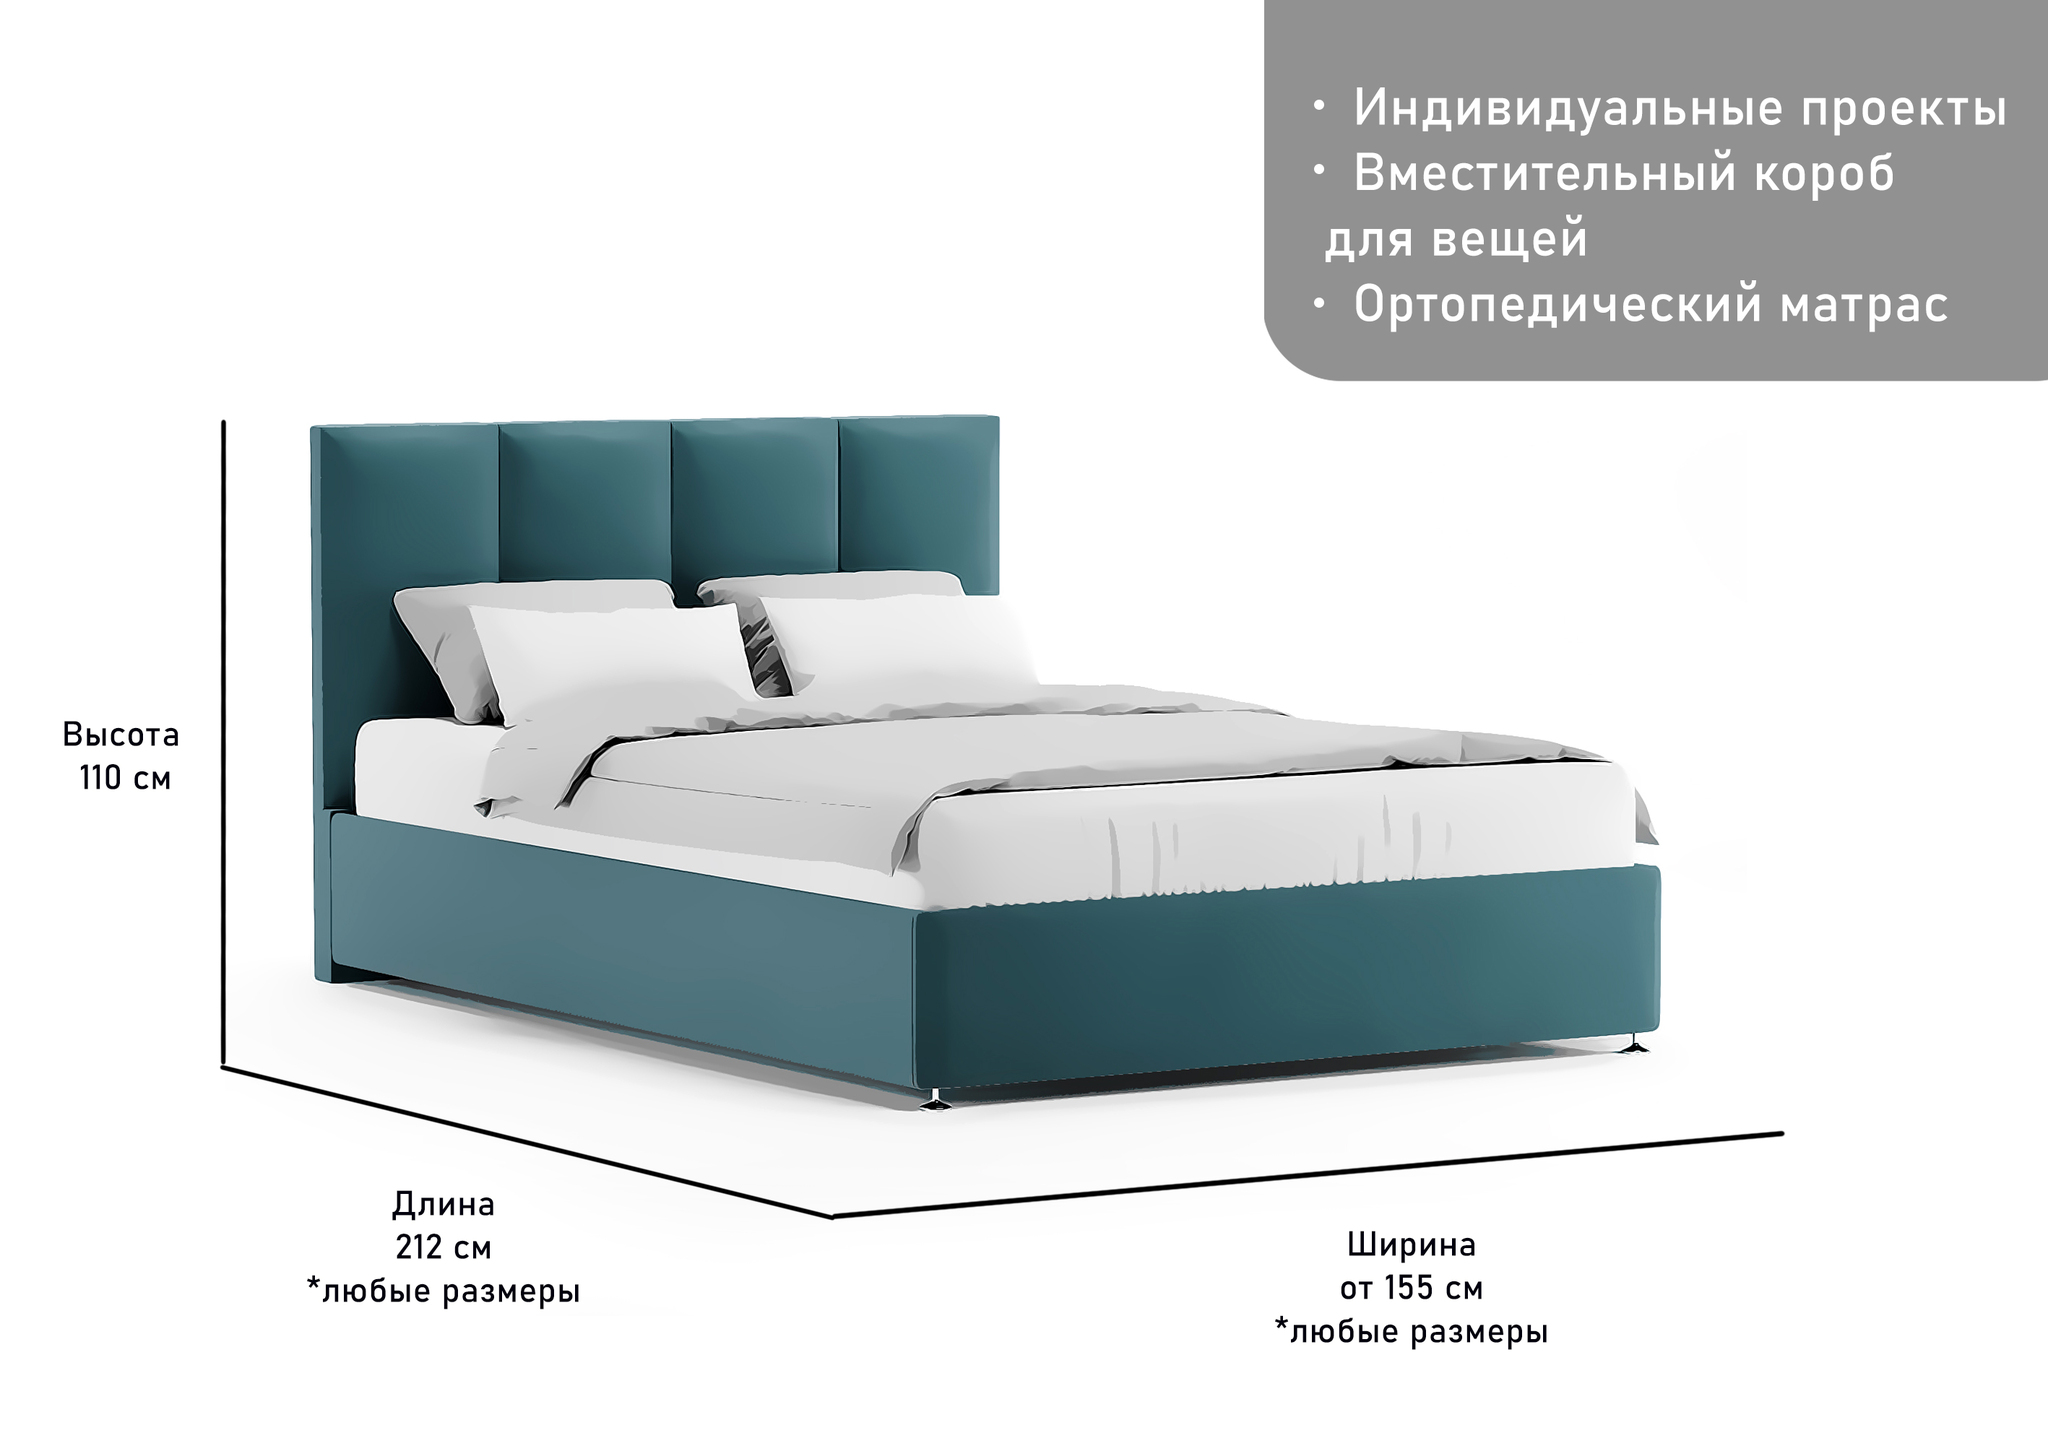 Обивка и перетяжка спинки кровати в мебельной мастерской Виконт в Москве